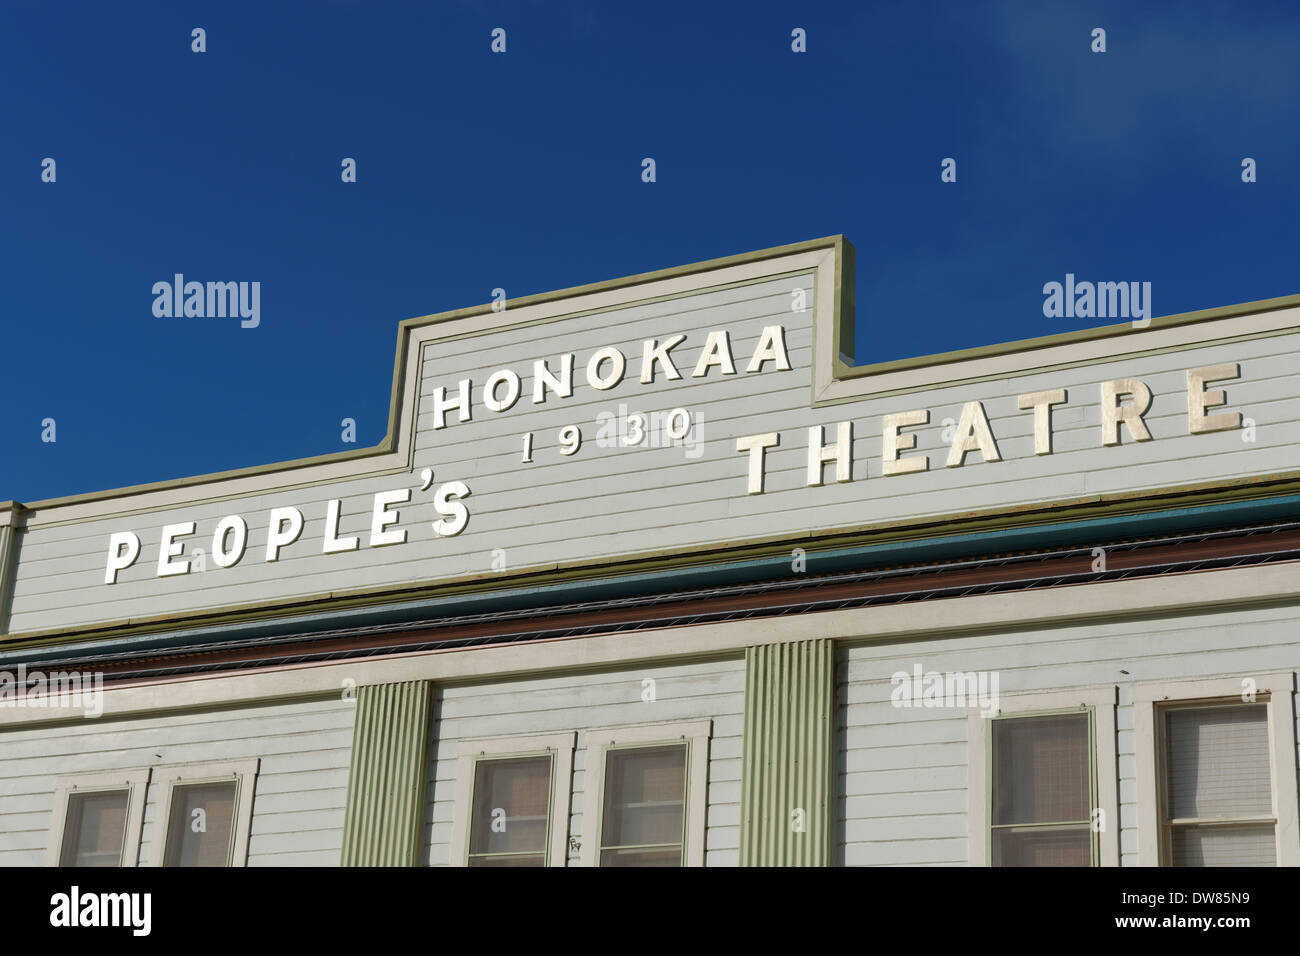 Peoples Theatre, Honokaa, Hamakua Coast, Big Island, Hawaii, USA Banque D'Images